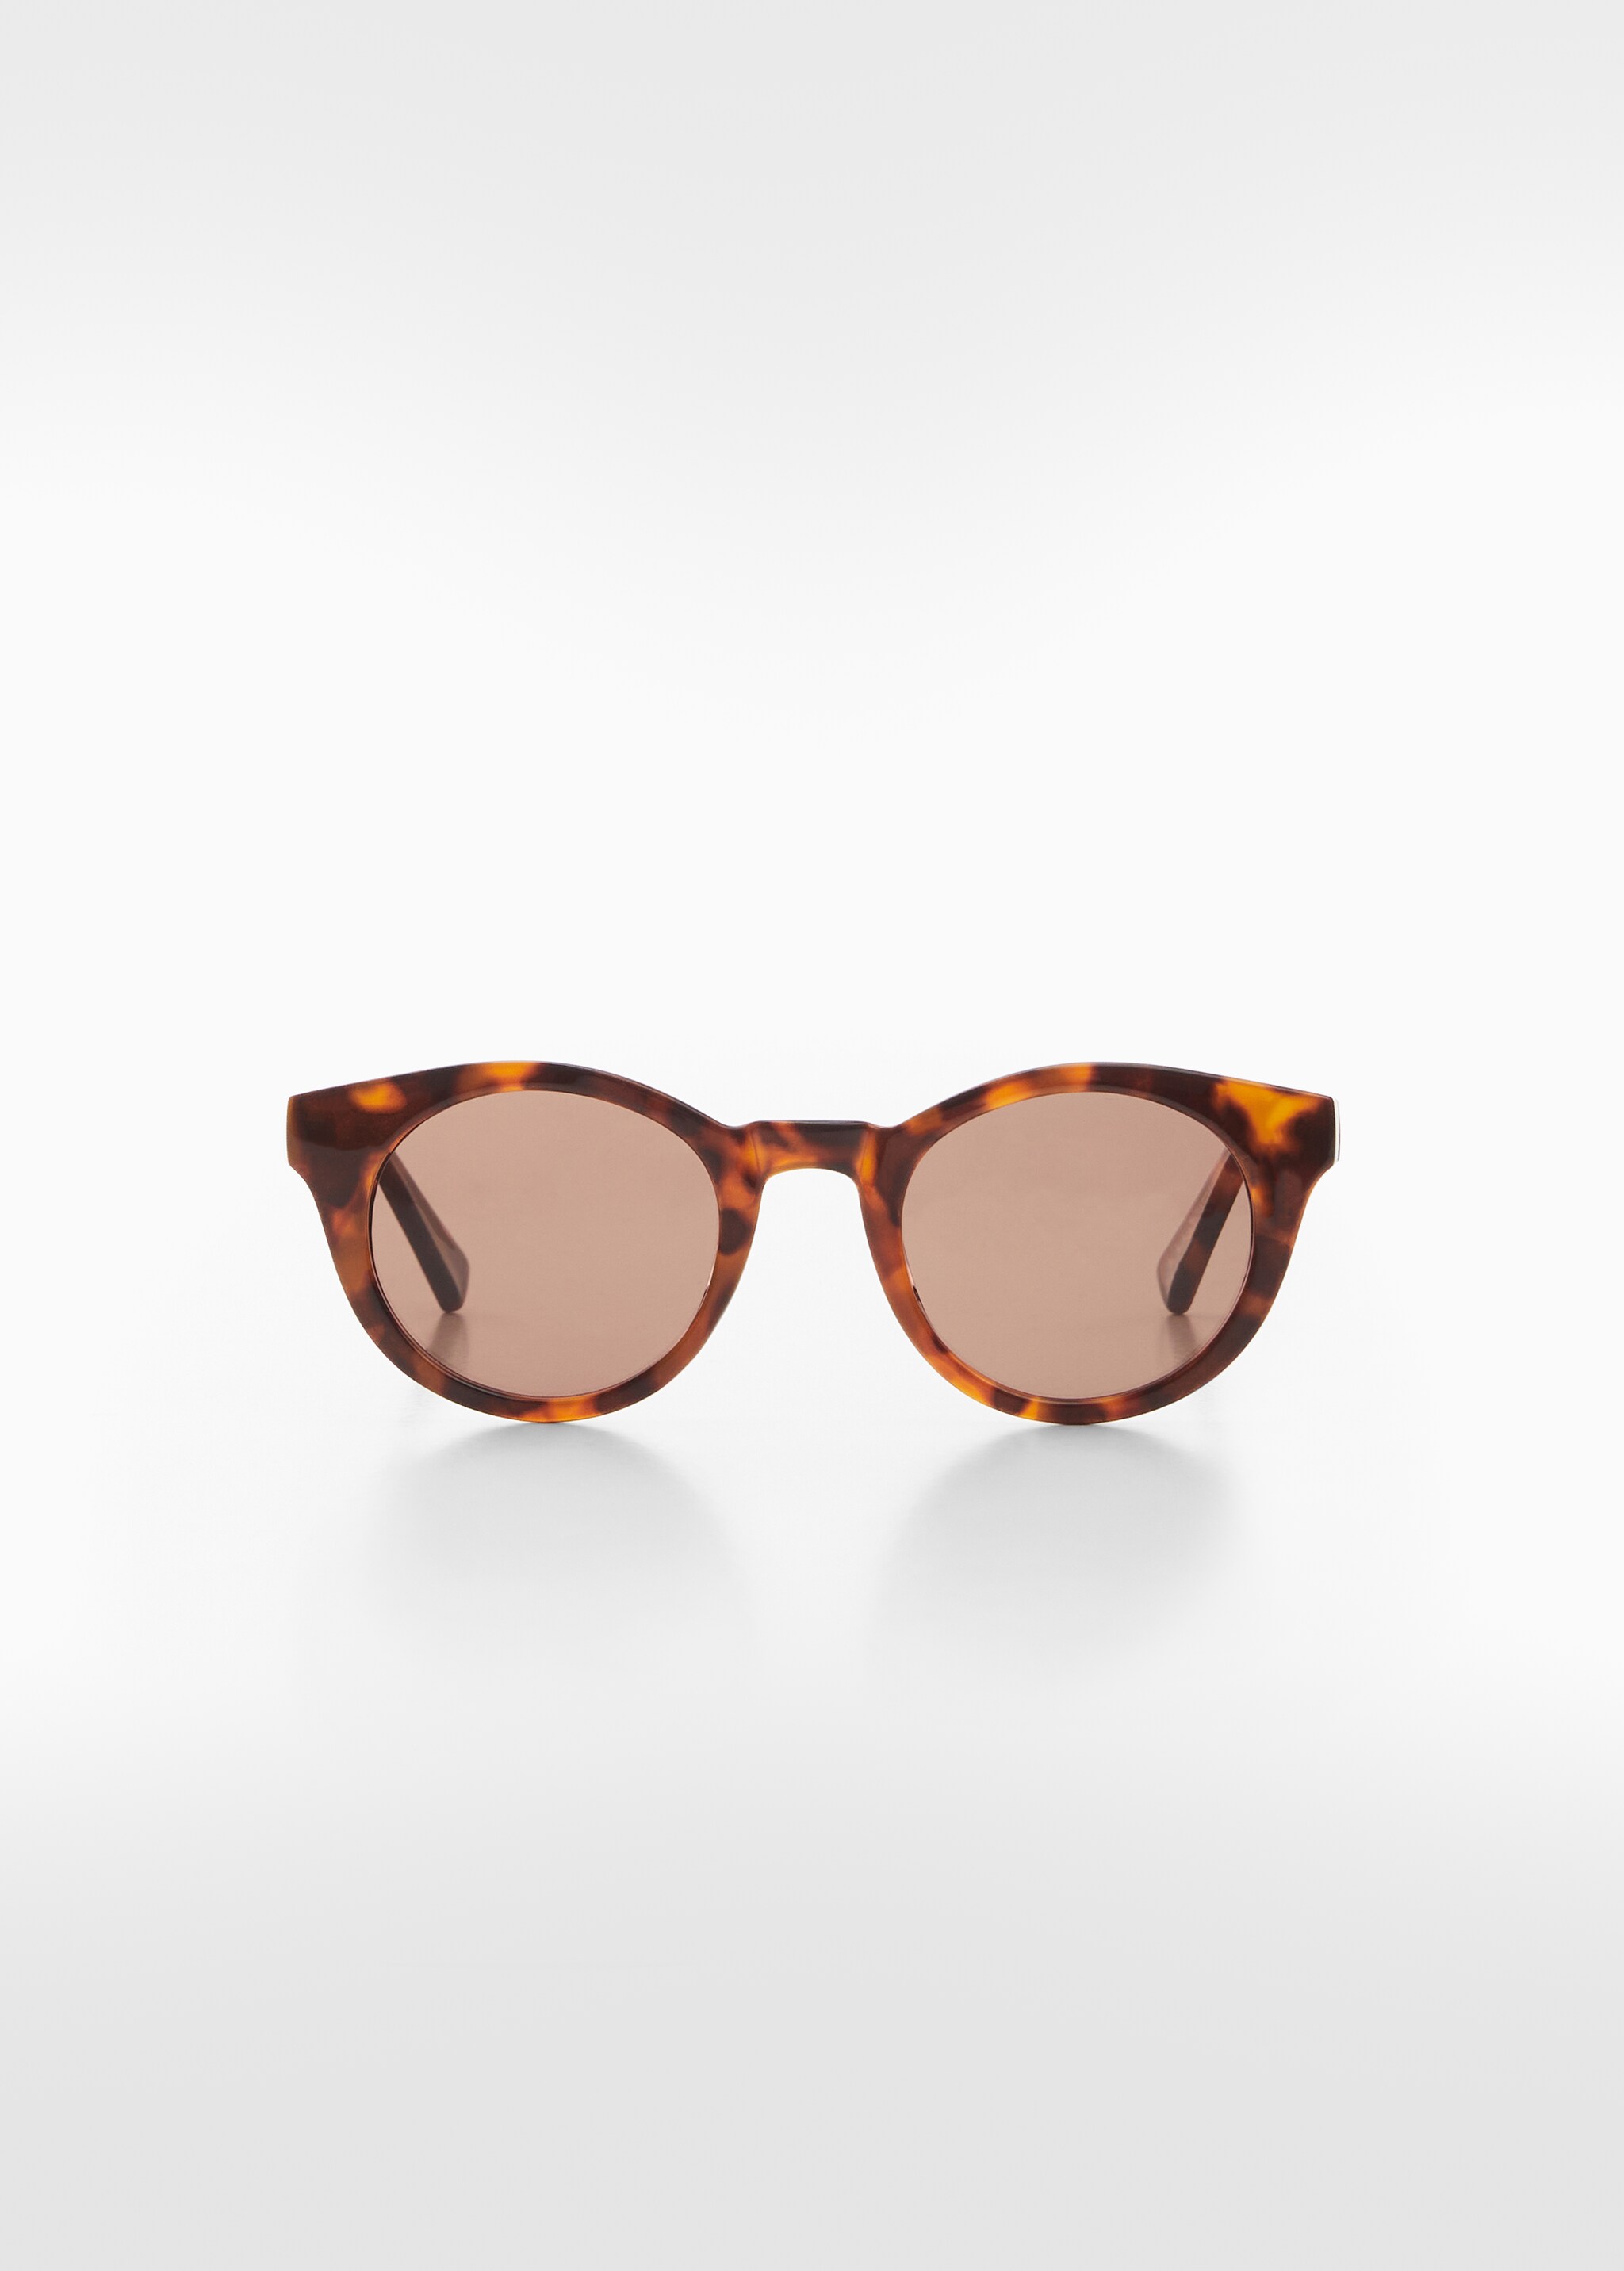 Солнцезащитные очки в стиле ретро - Изделие без модели